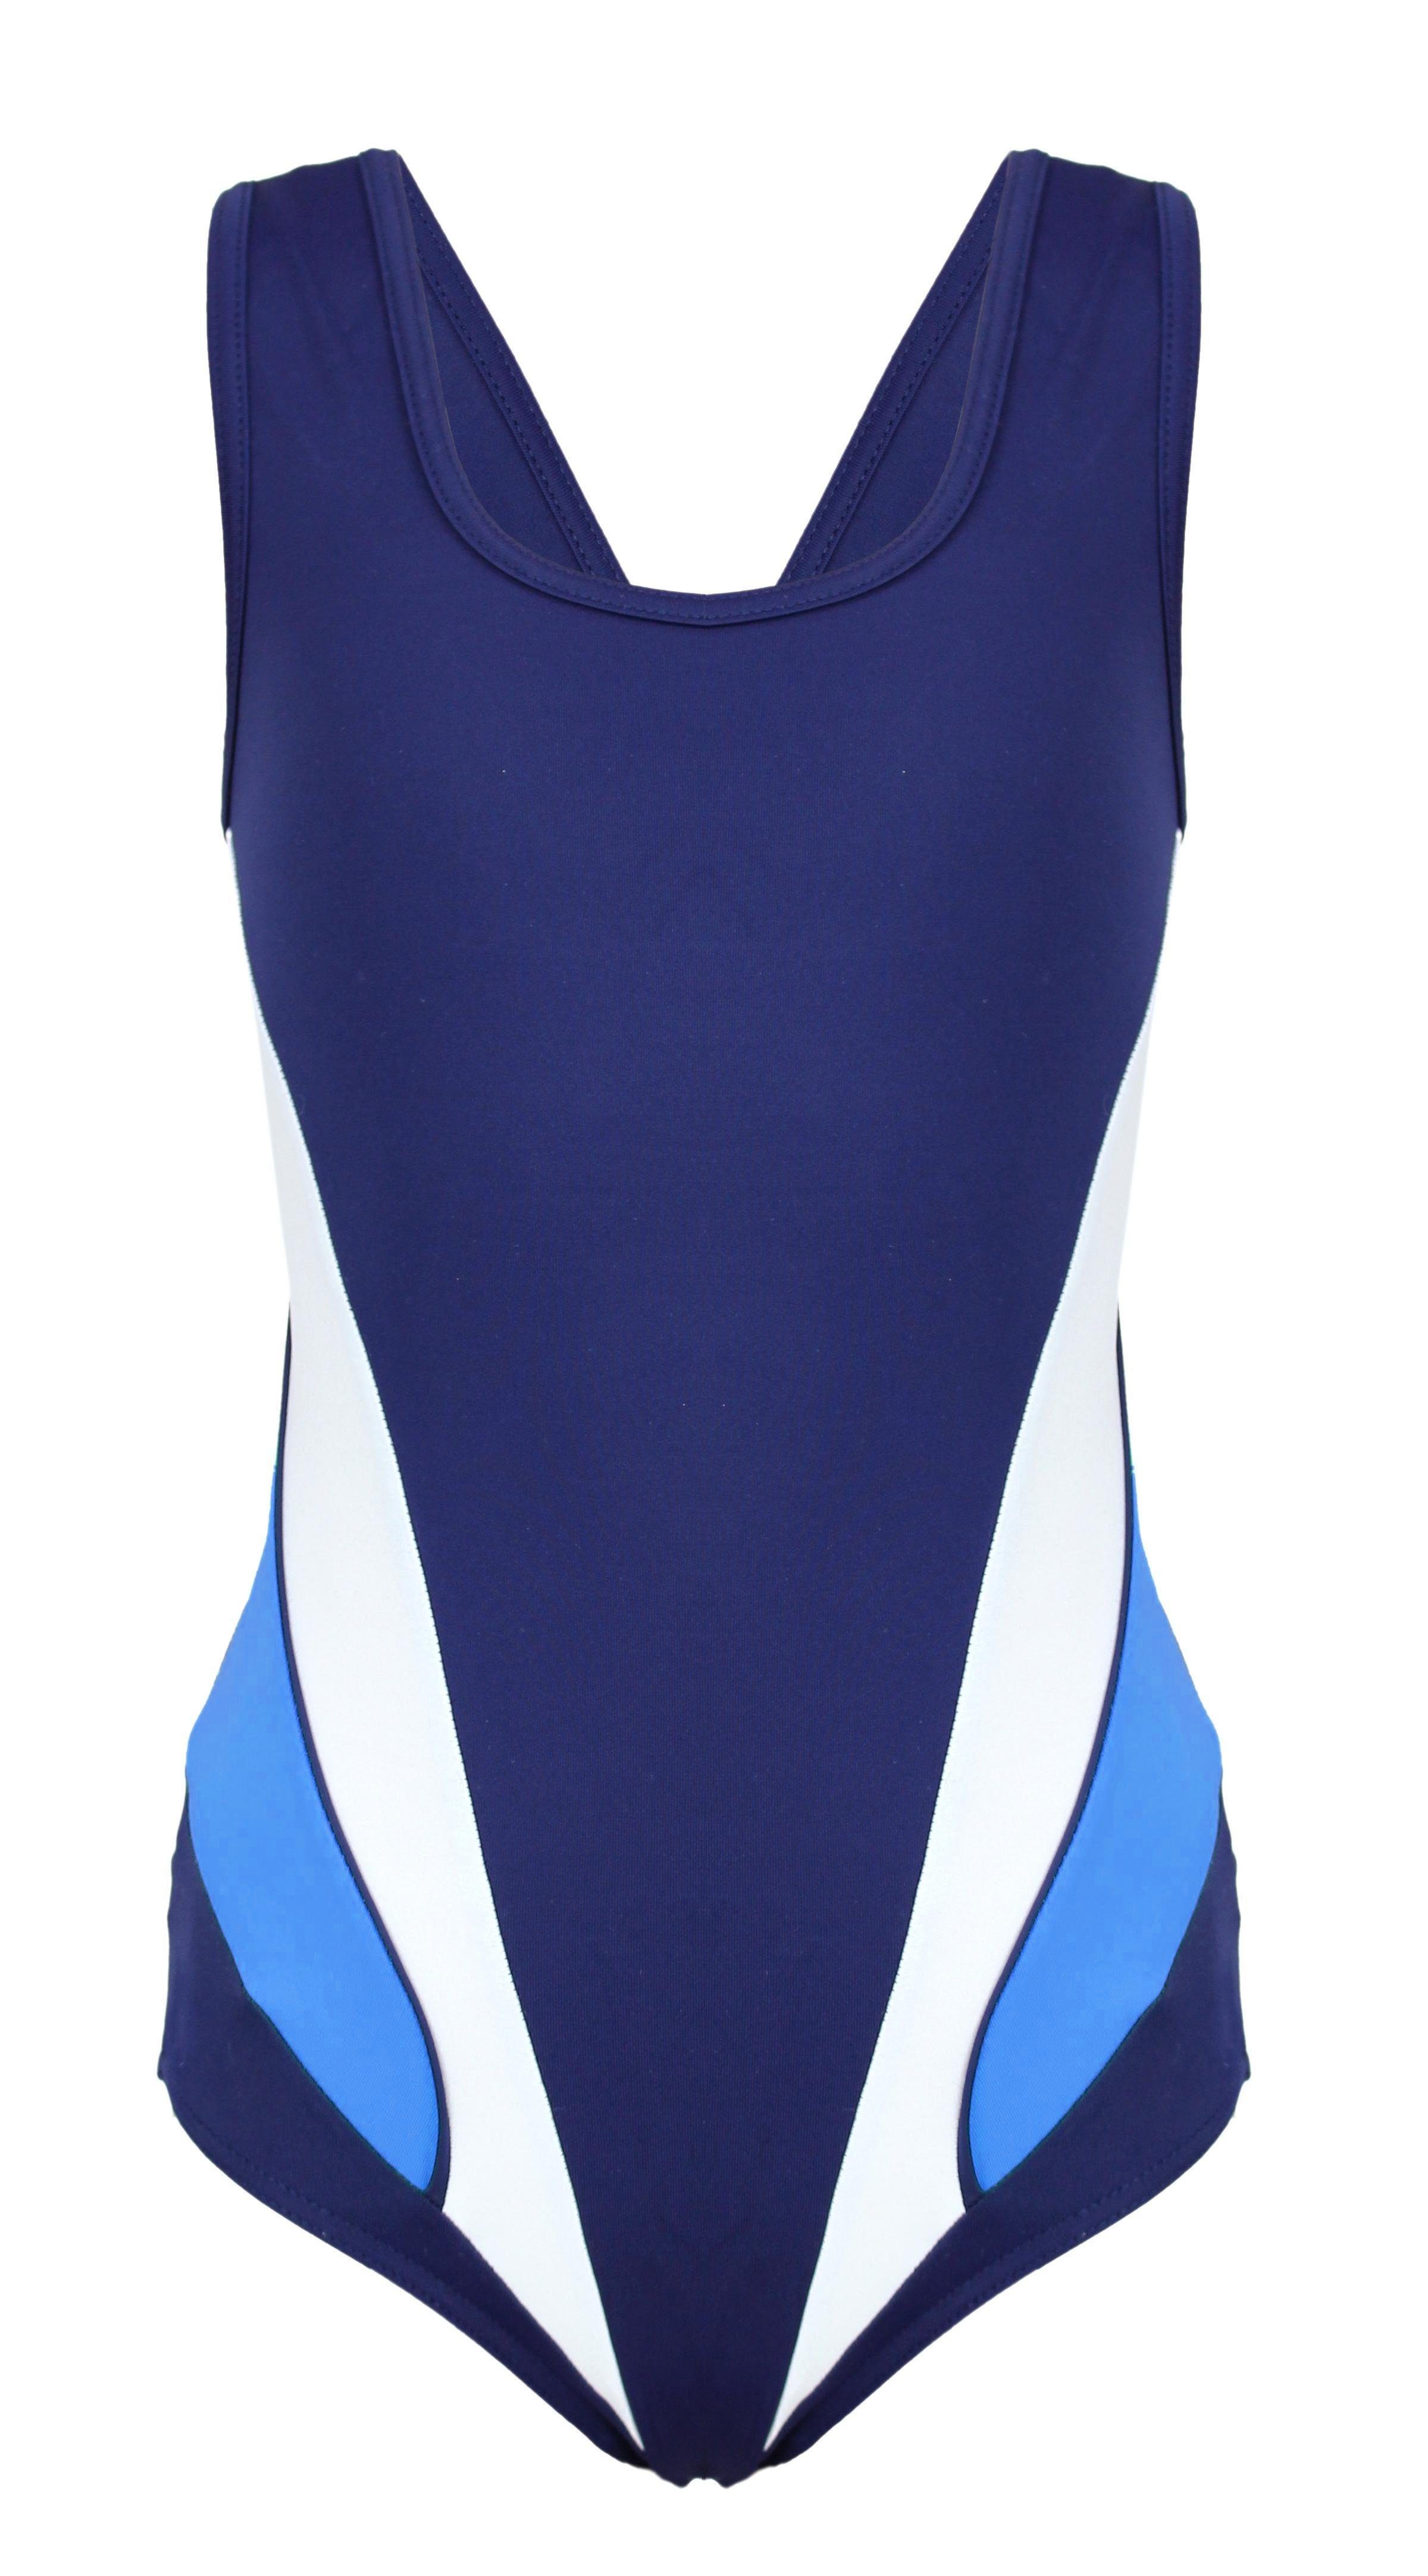 Sportlich Schwimmanzug / Mädchen mit Schwimmanzug Y-Träger Aquarti Aquarti Blau Dunkelblau